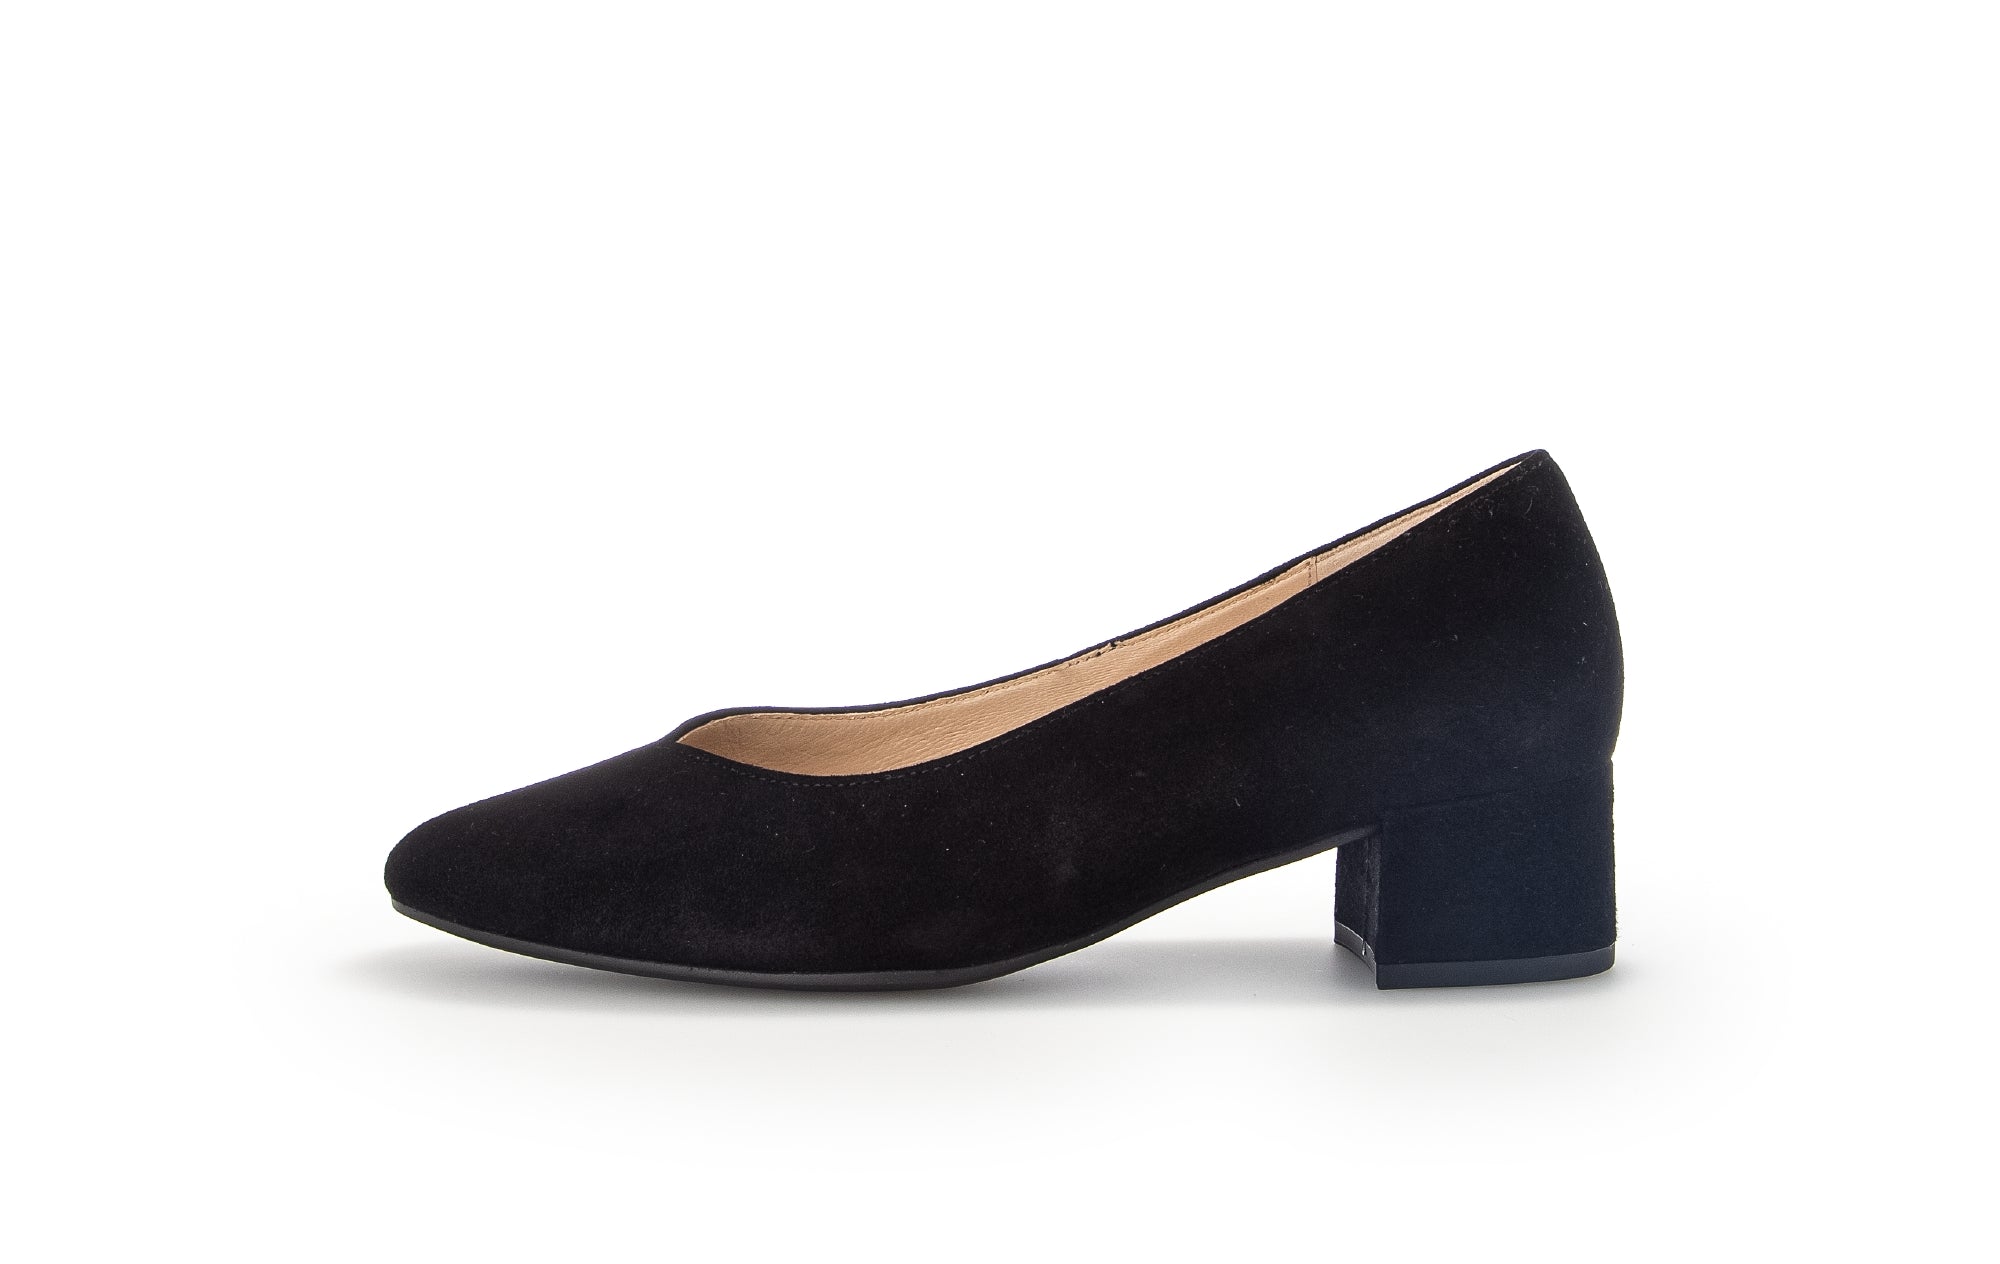 Vintage Stuart Weitzman pumps | black | patent leather heels | exclusive  shoes | block heel | size EUR 39